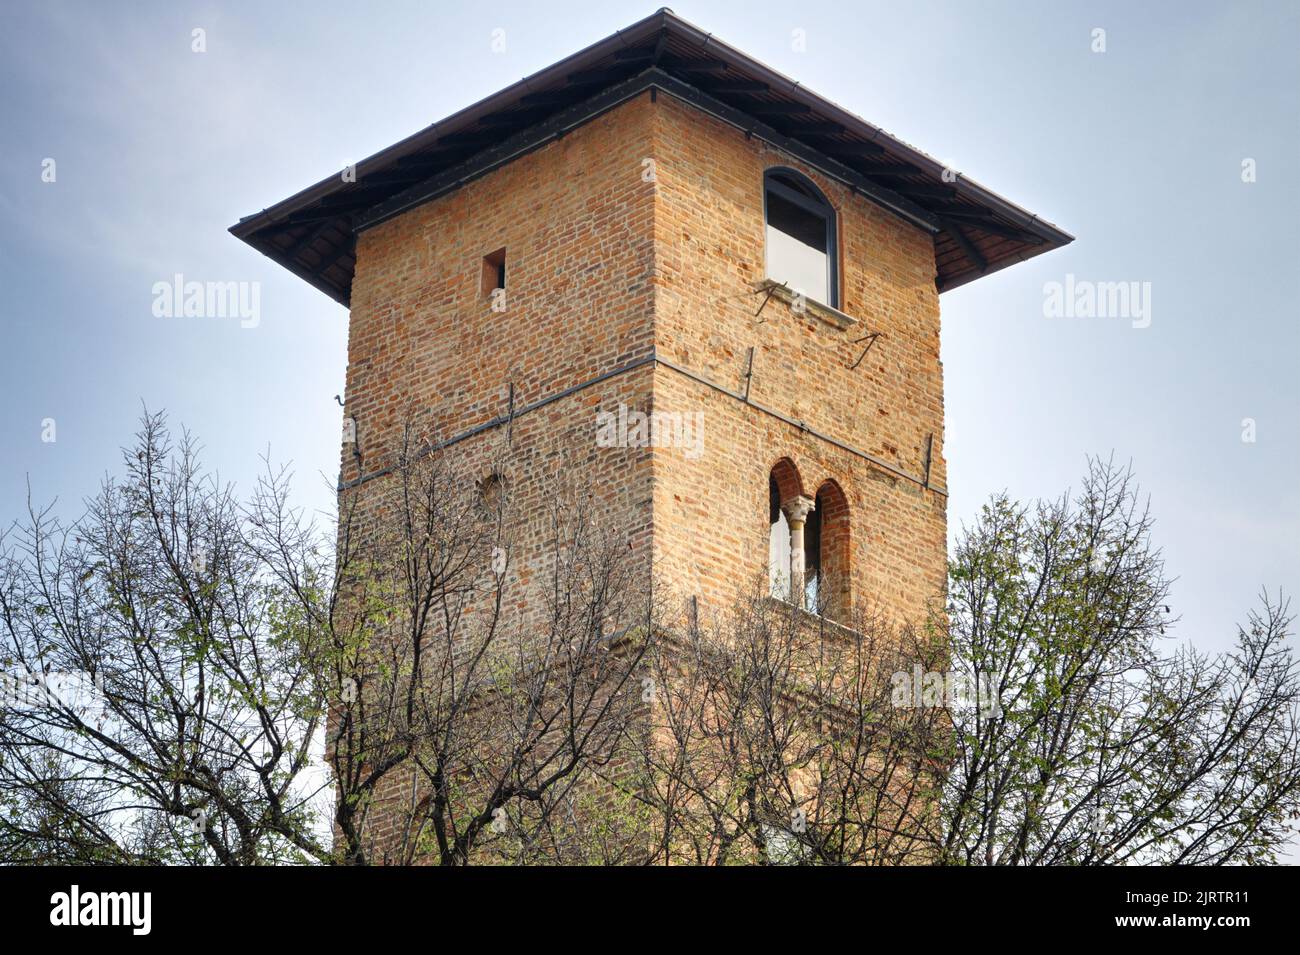 Old Milan - The Medieval Torre dei Gorani (Gorani's Tower), 11th century - Via Brisa, Milan Stock Photo